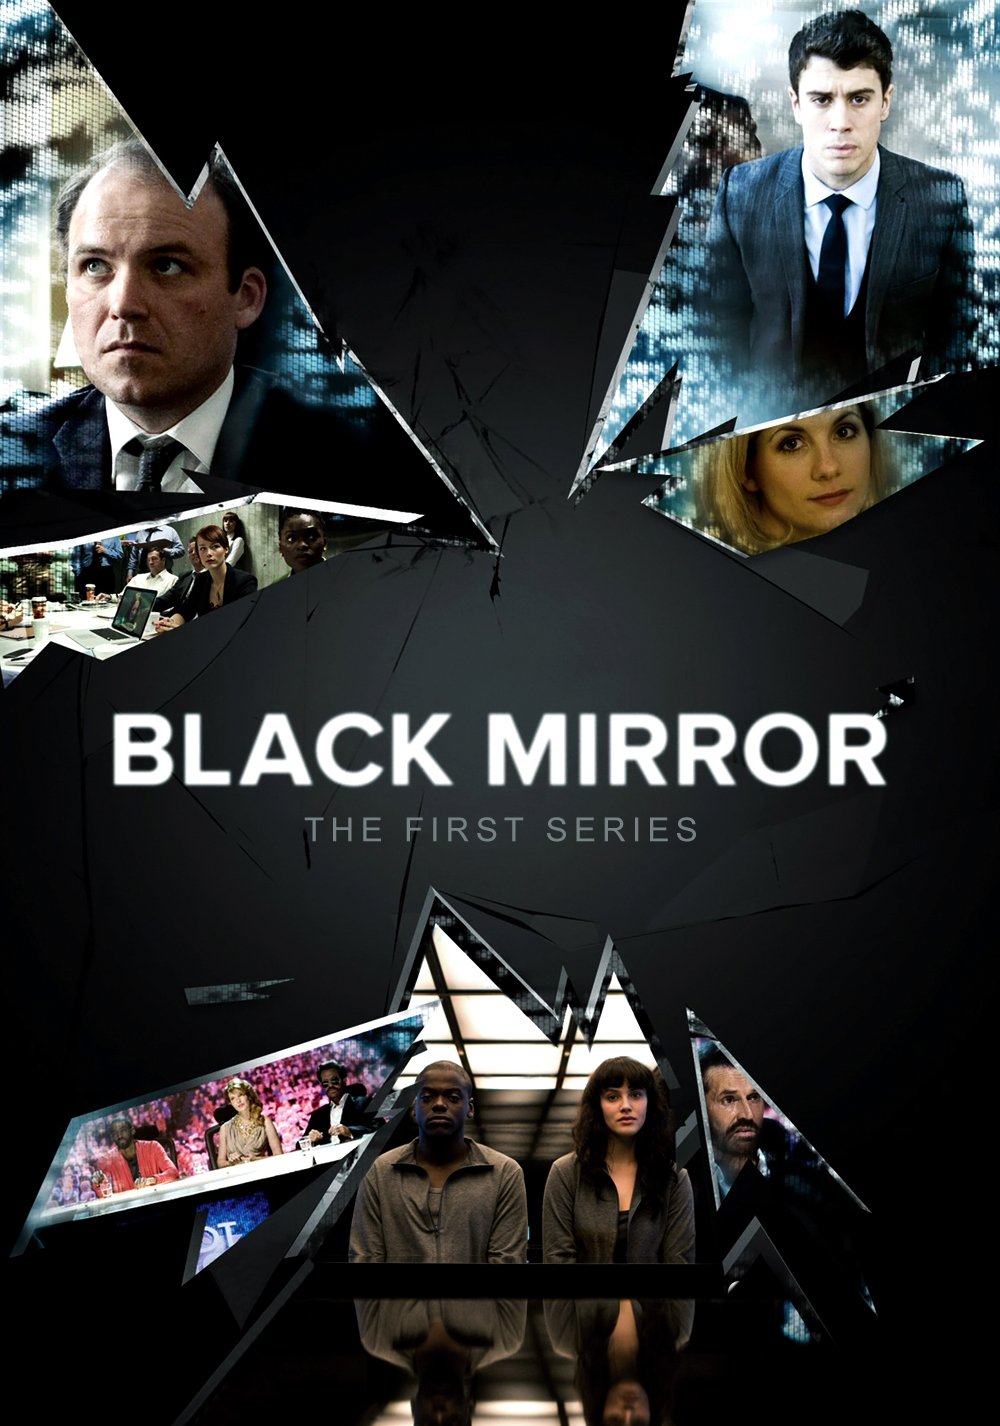 შავი სარკე სეზონი 2 / Black Mirror Season 2 ქართულად